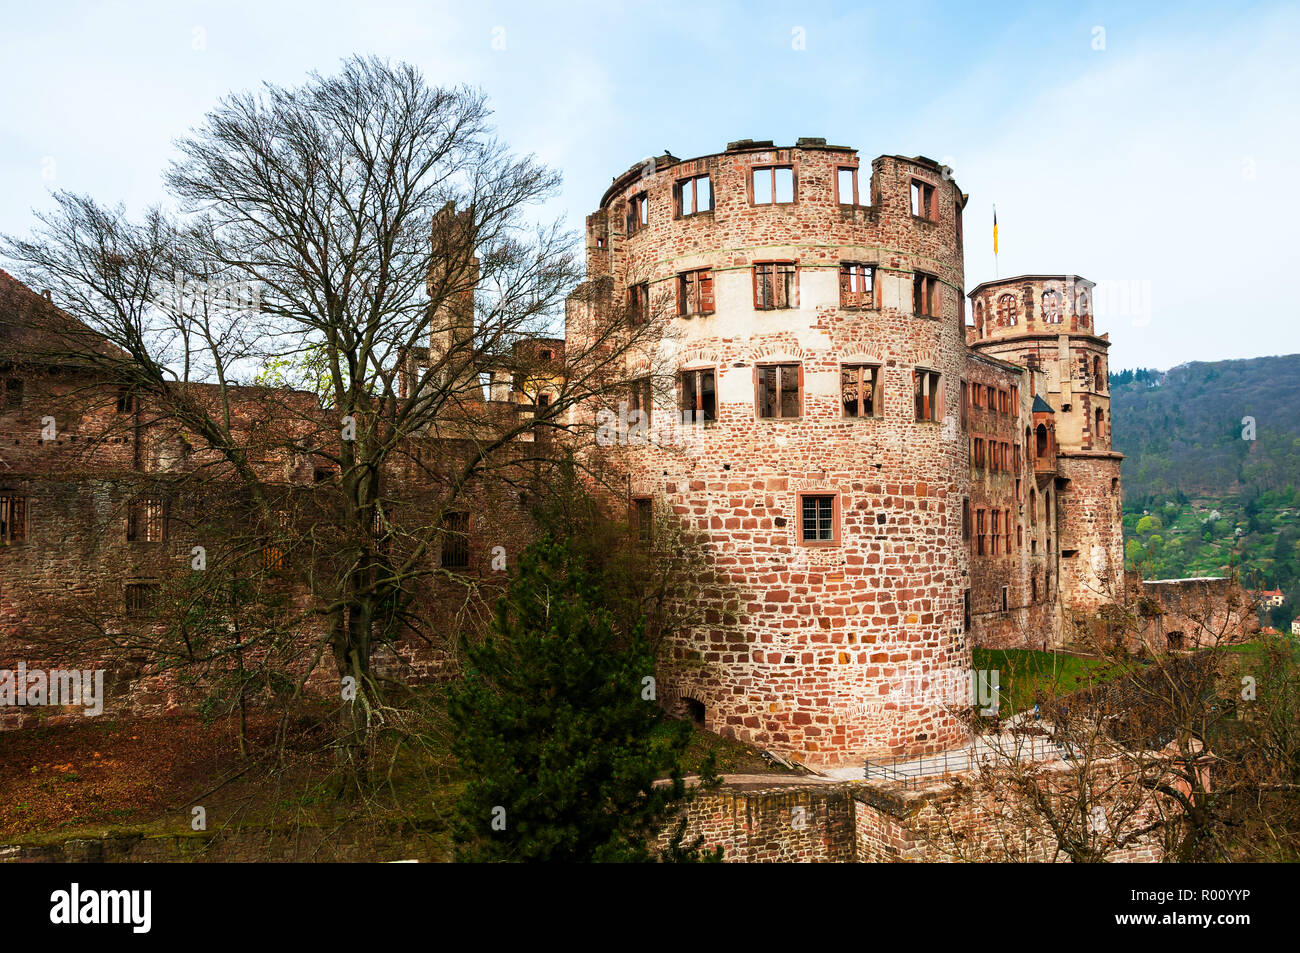 Heidelberg, Germania. Lo stile rinascimentale del castello di Heidelberg - rovina e un punto di riferimento in Germania. Una popolare destinazione turistica, la più famosa attrazione del Foto Stock